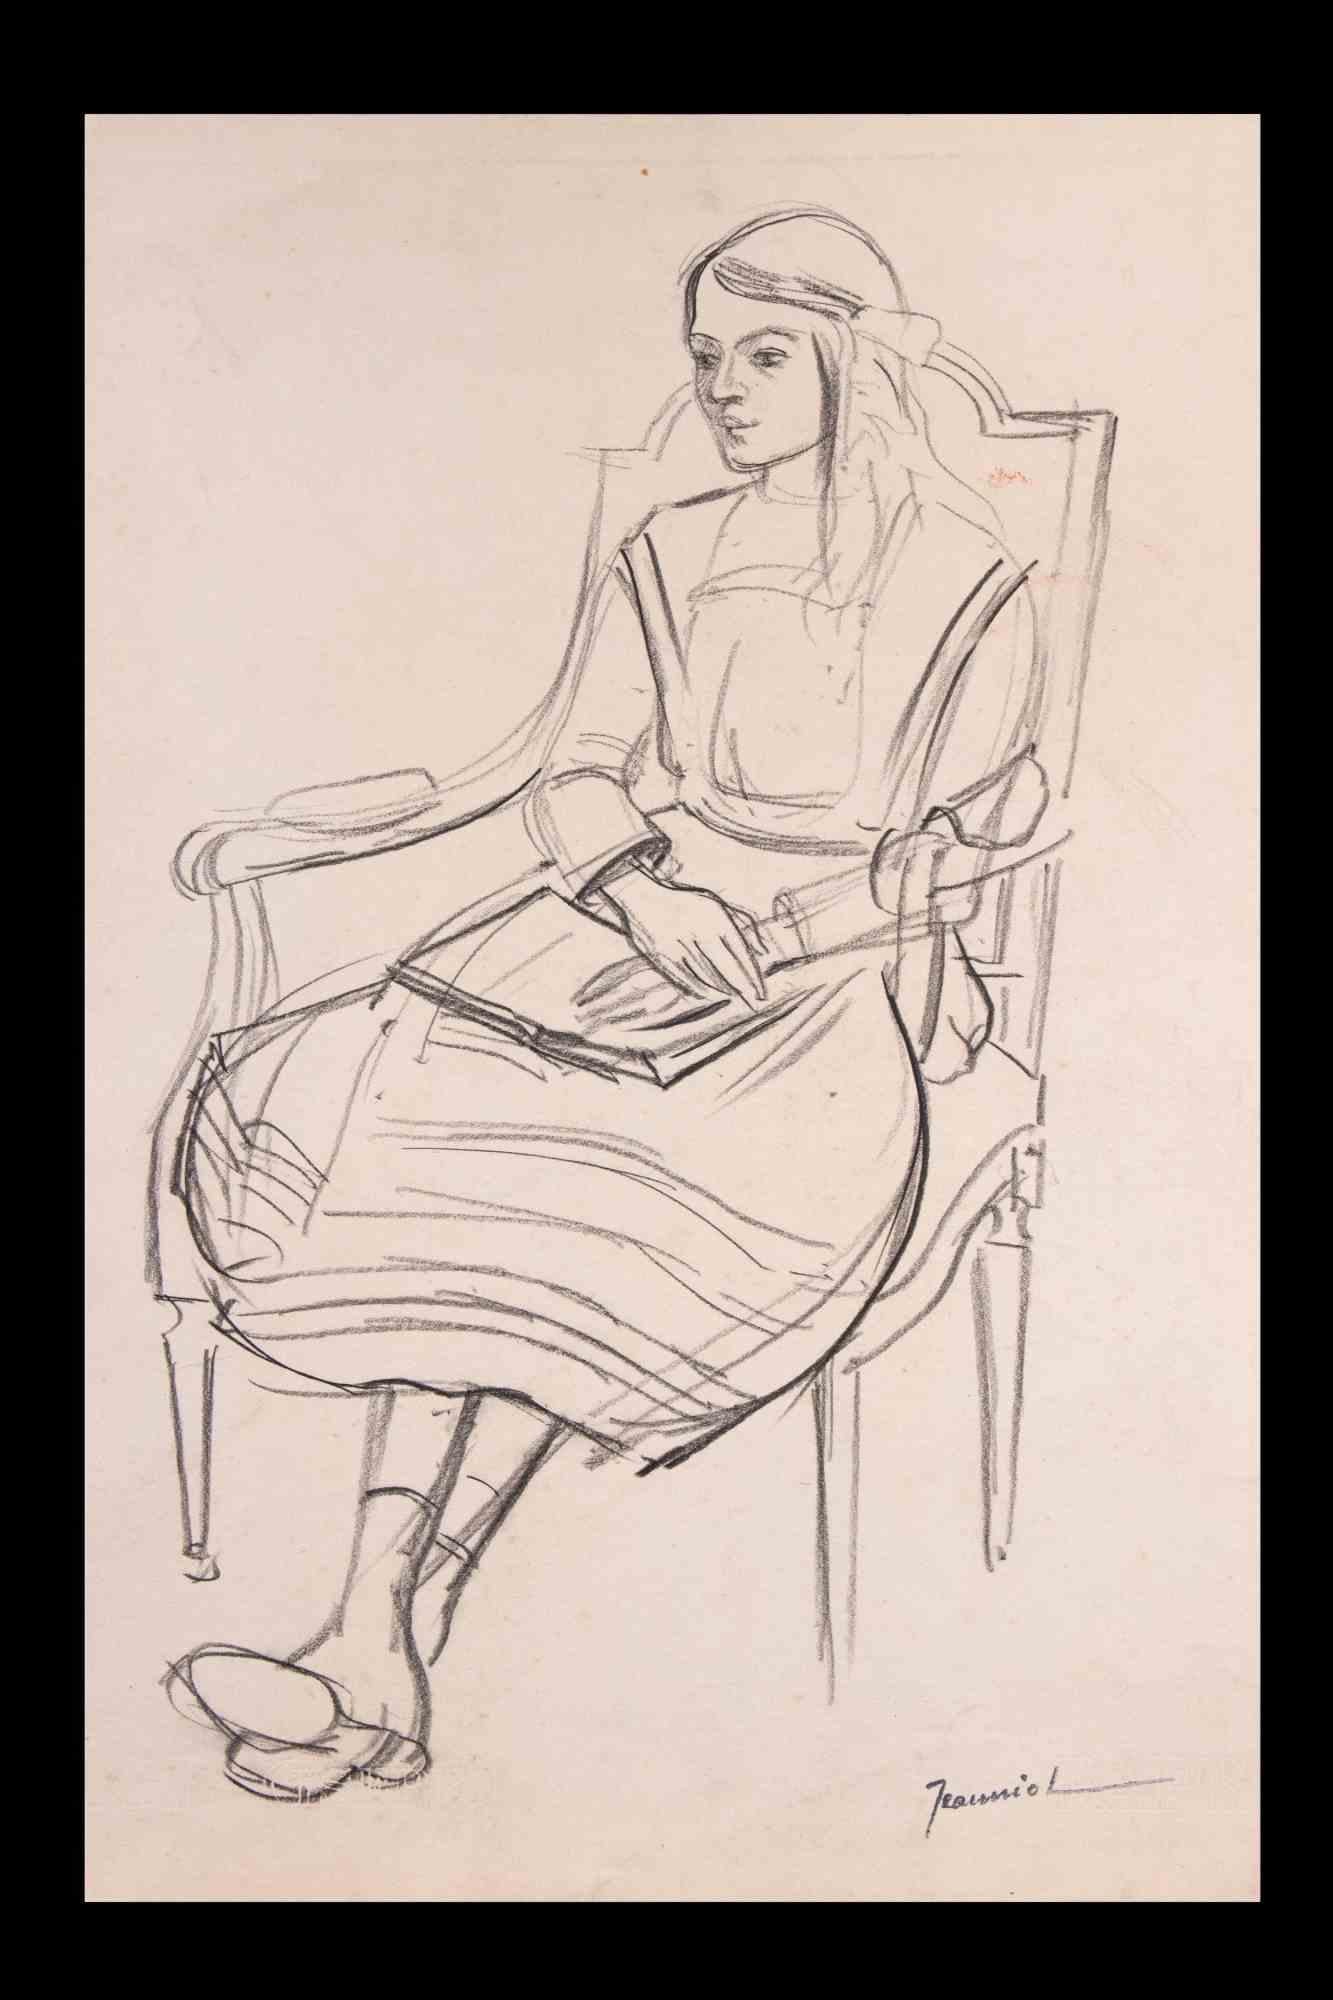 Femme au repos est un dessin original sur papier réalisé par le peintre Pierre Georges Jeanniot (1848-1934).

Dessin au crayon.

Signé à la main en bas.

Bonnes conditions.

Pierre-Georges Jeanniot (1848-1934) est un peintre, dessinateur,